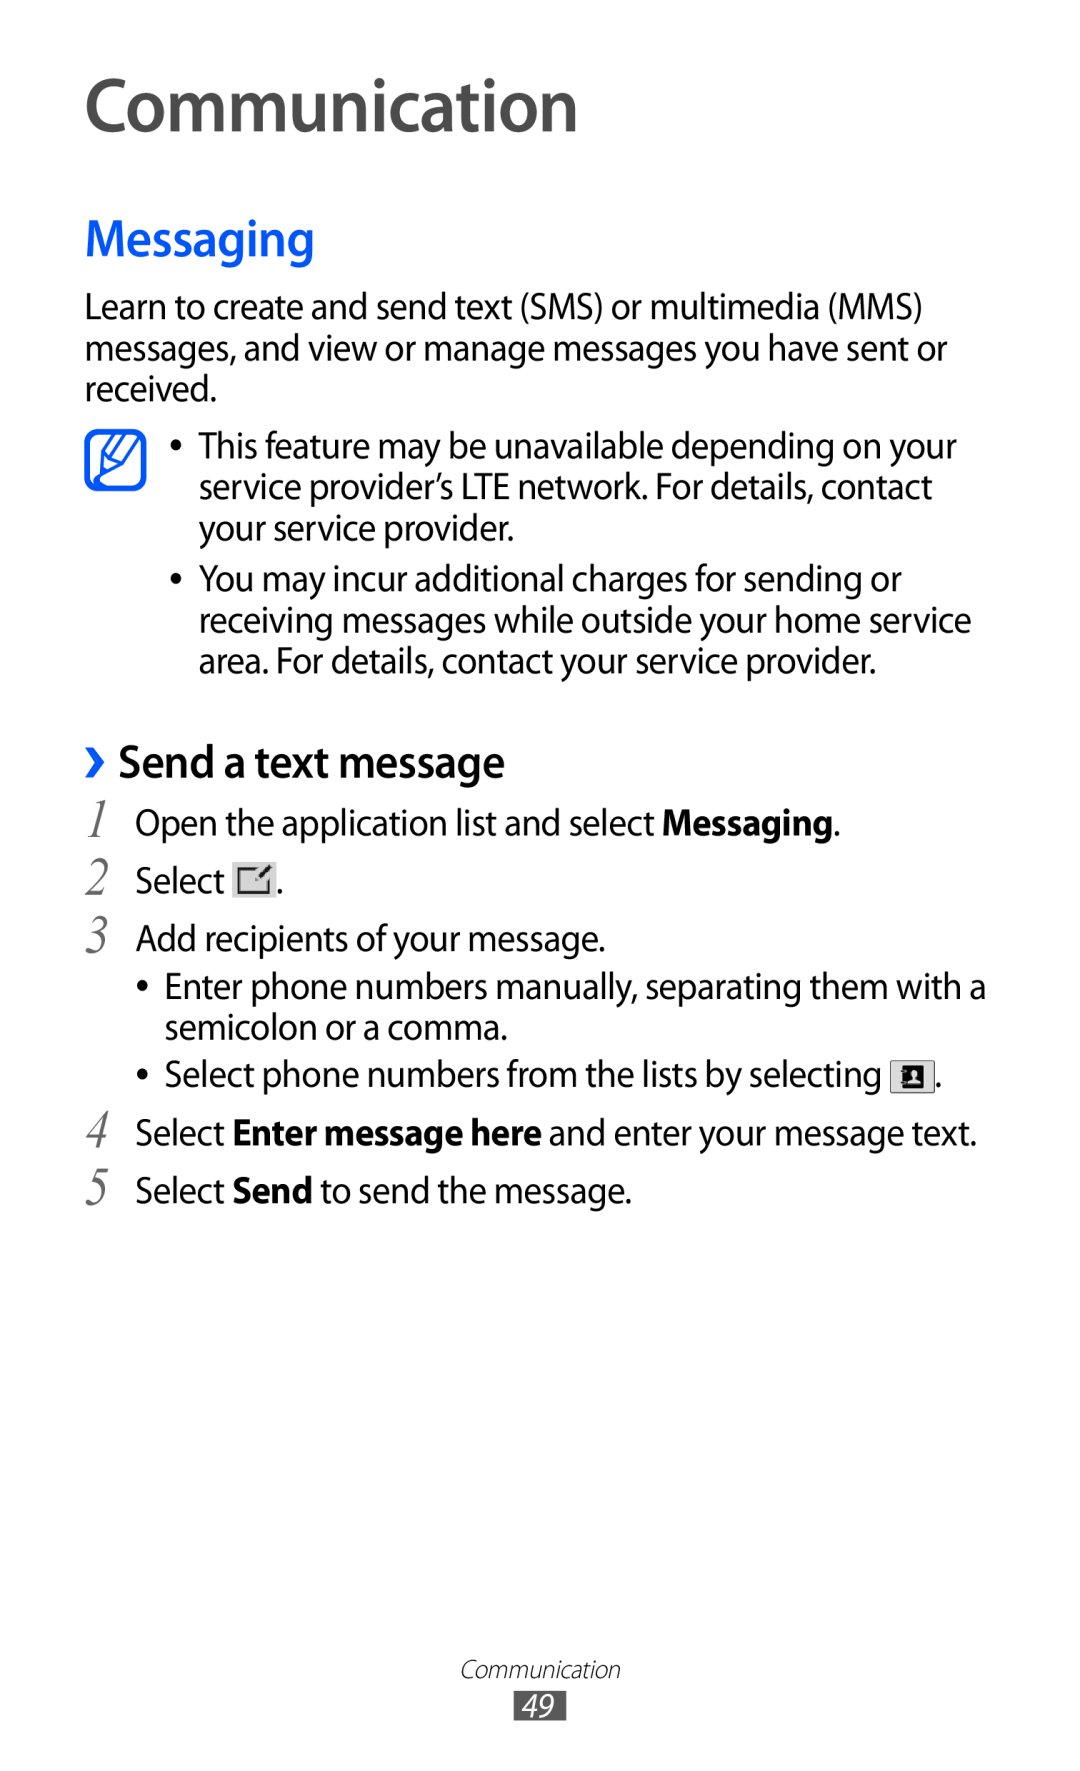 Samsung GT-P7320FKAOPT, GT-P7320UWAVD2, GT-P7320FKATMN, GT-P7320UWADTM manual Communication, Messaging, ››Send a text message 